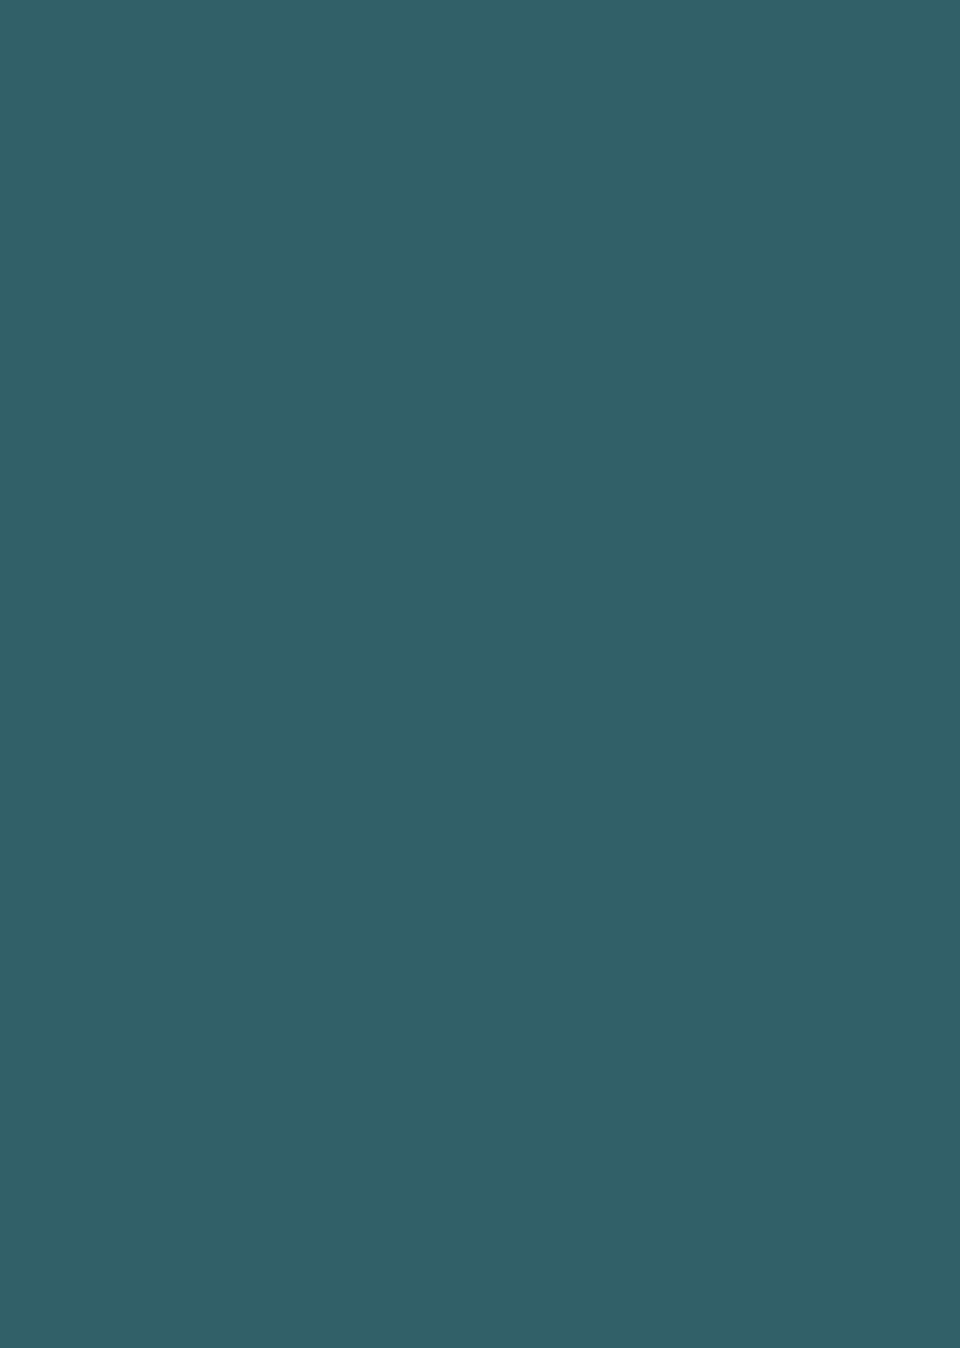 Александр Иванов. Оливковое дерево. долина Ариччи. 1842. Государственная Третьяковская галерея, Москва